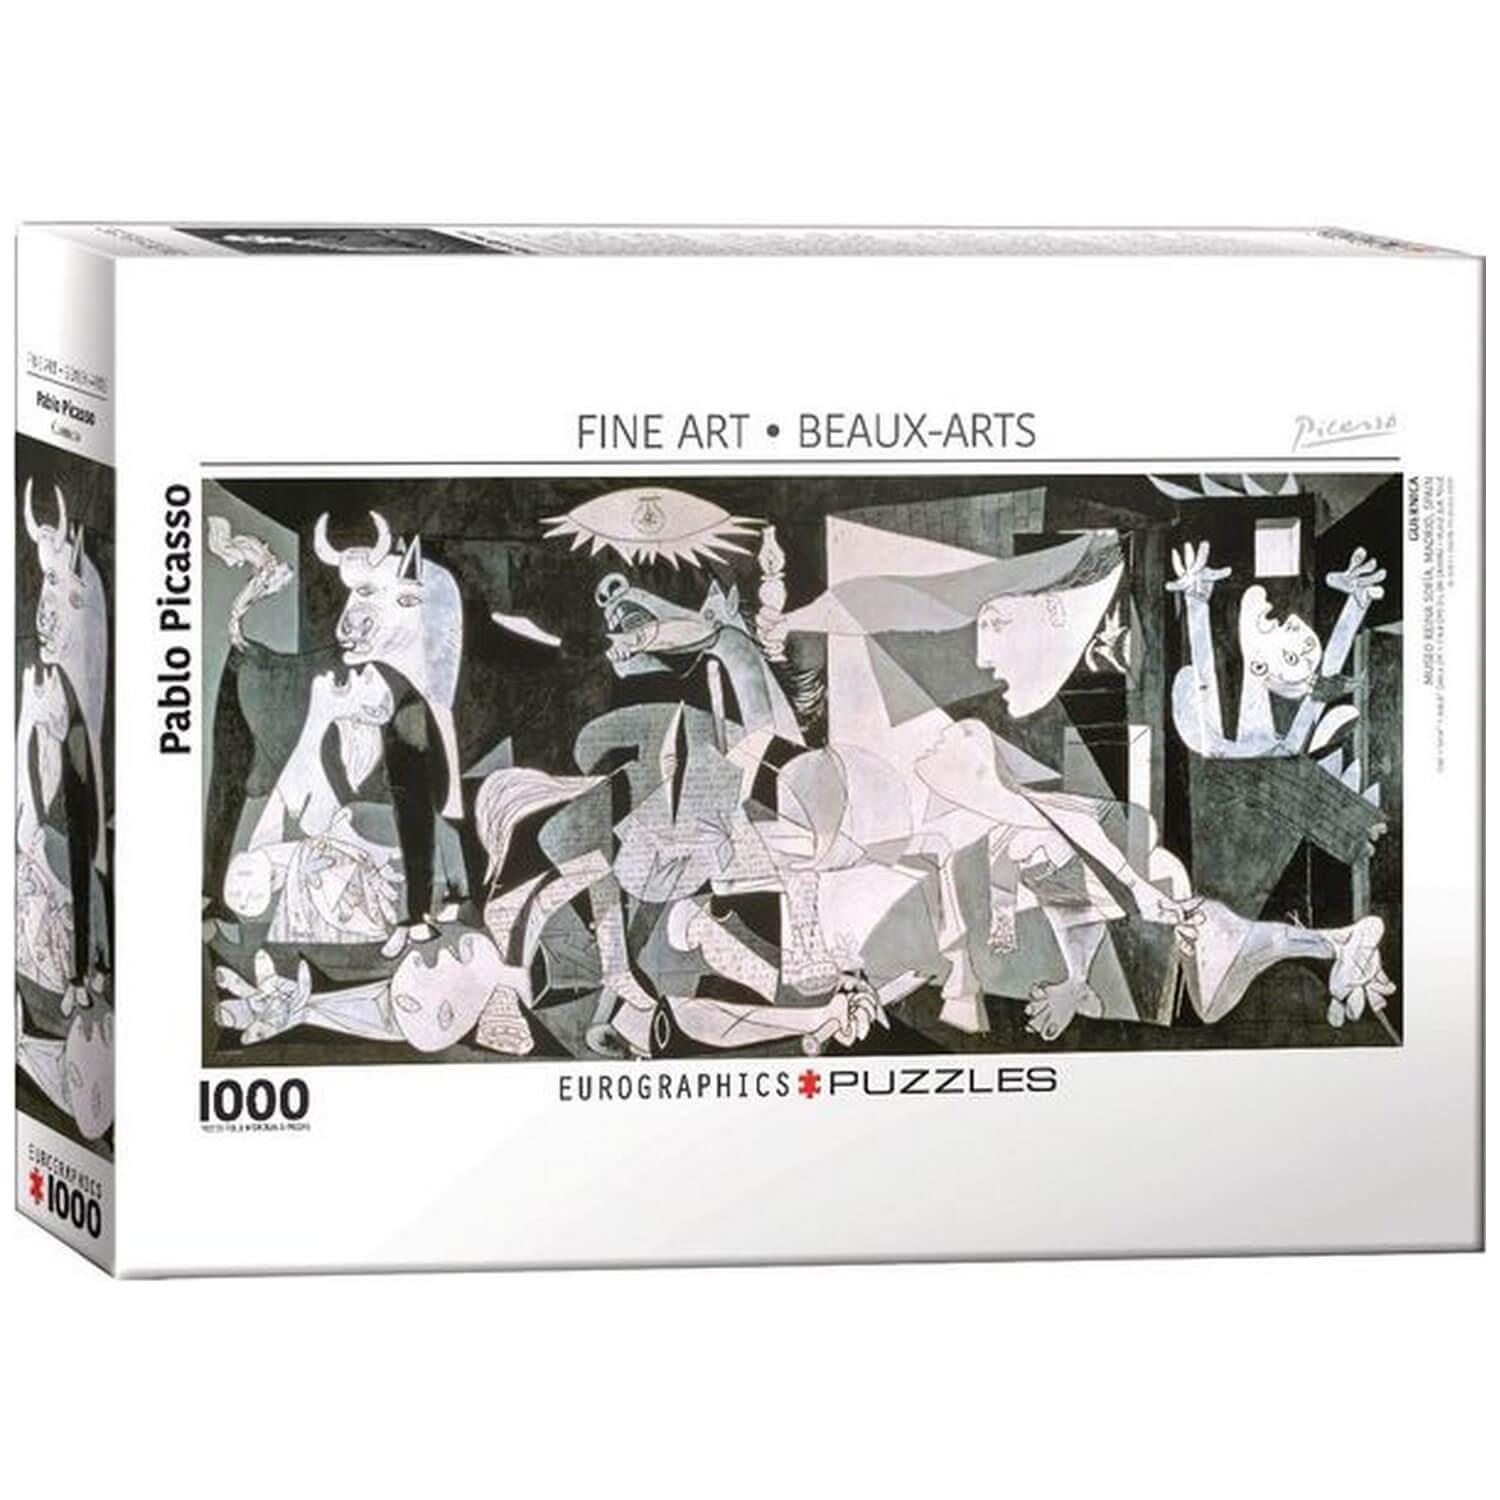 Puzzle1000 pièces : Guernica par Pablo Picasso